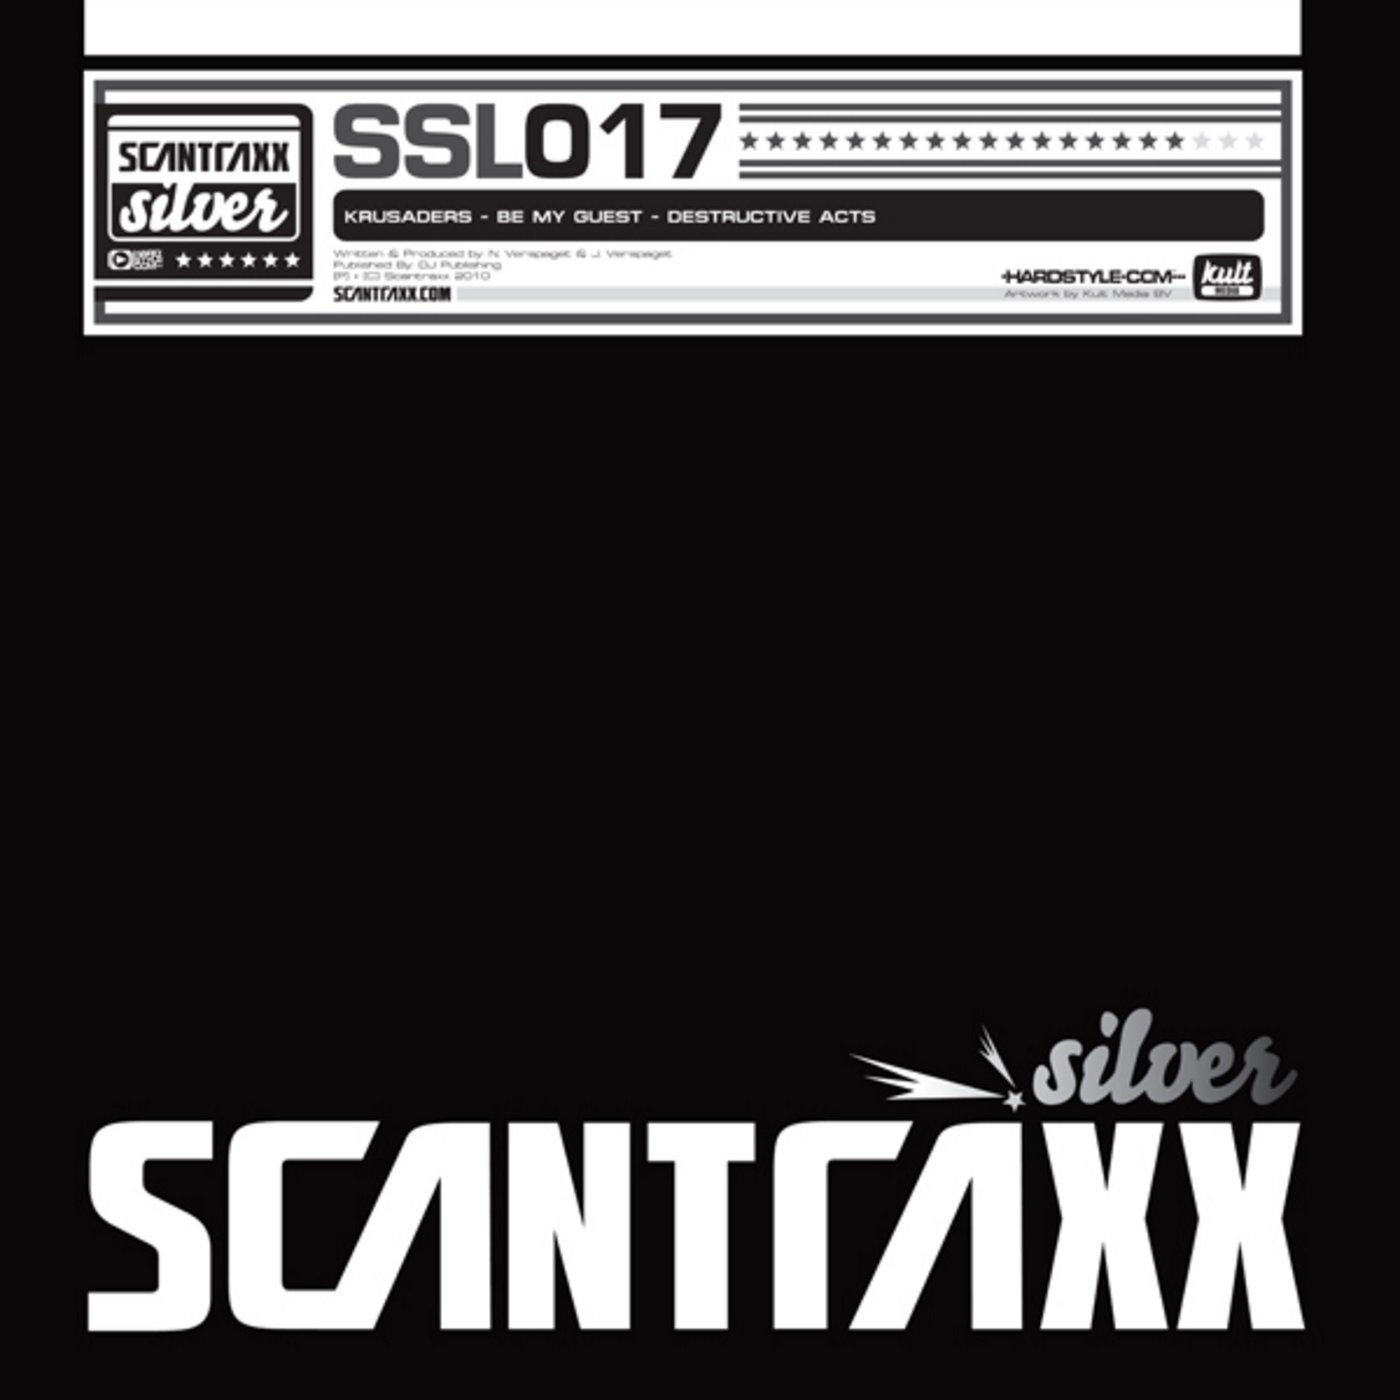 Scantraxx Silver 017